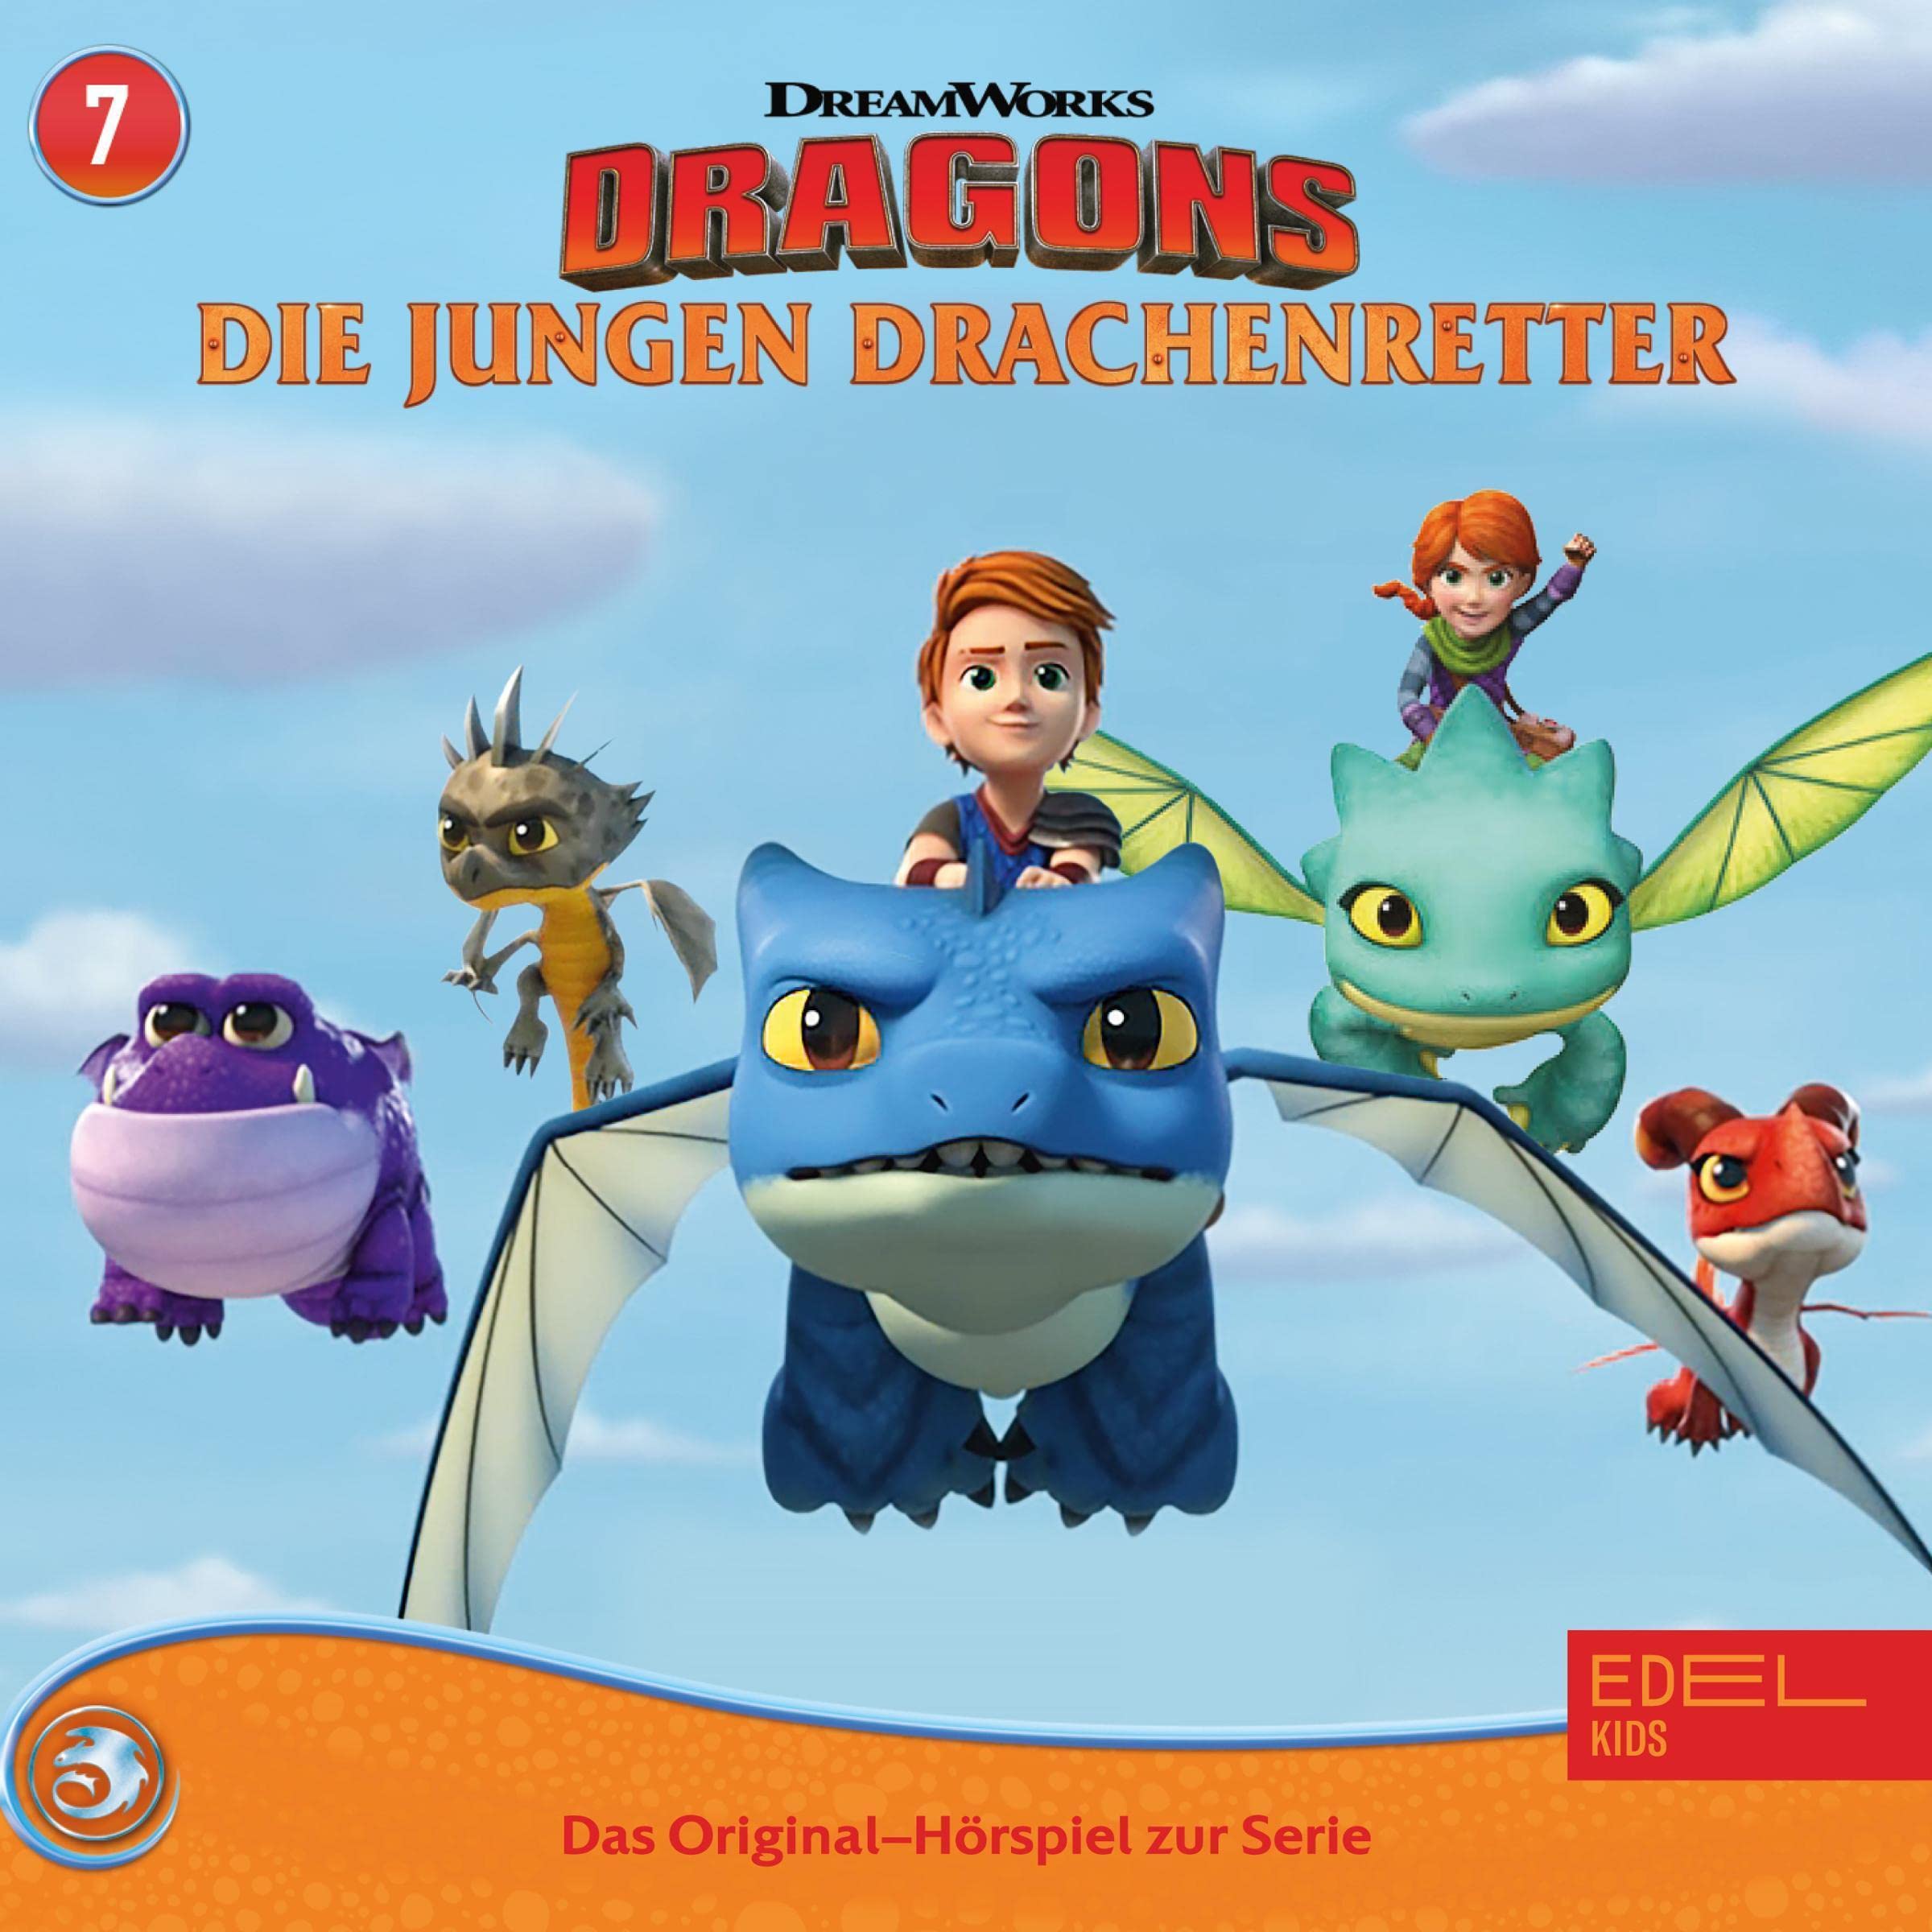 Grummelgard 1 & 2. Das Original-Hörspiel zur TV-Serie: Dragons - Die jungen Drachenretter 7